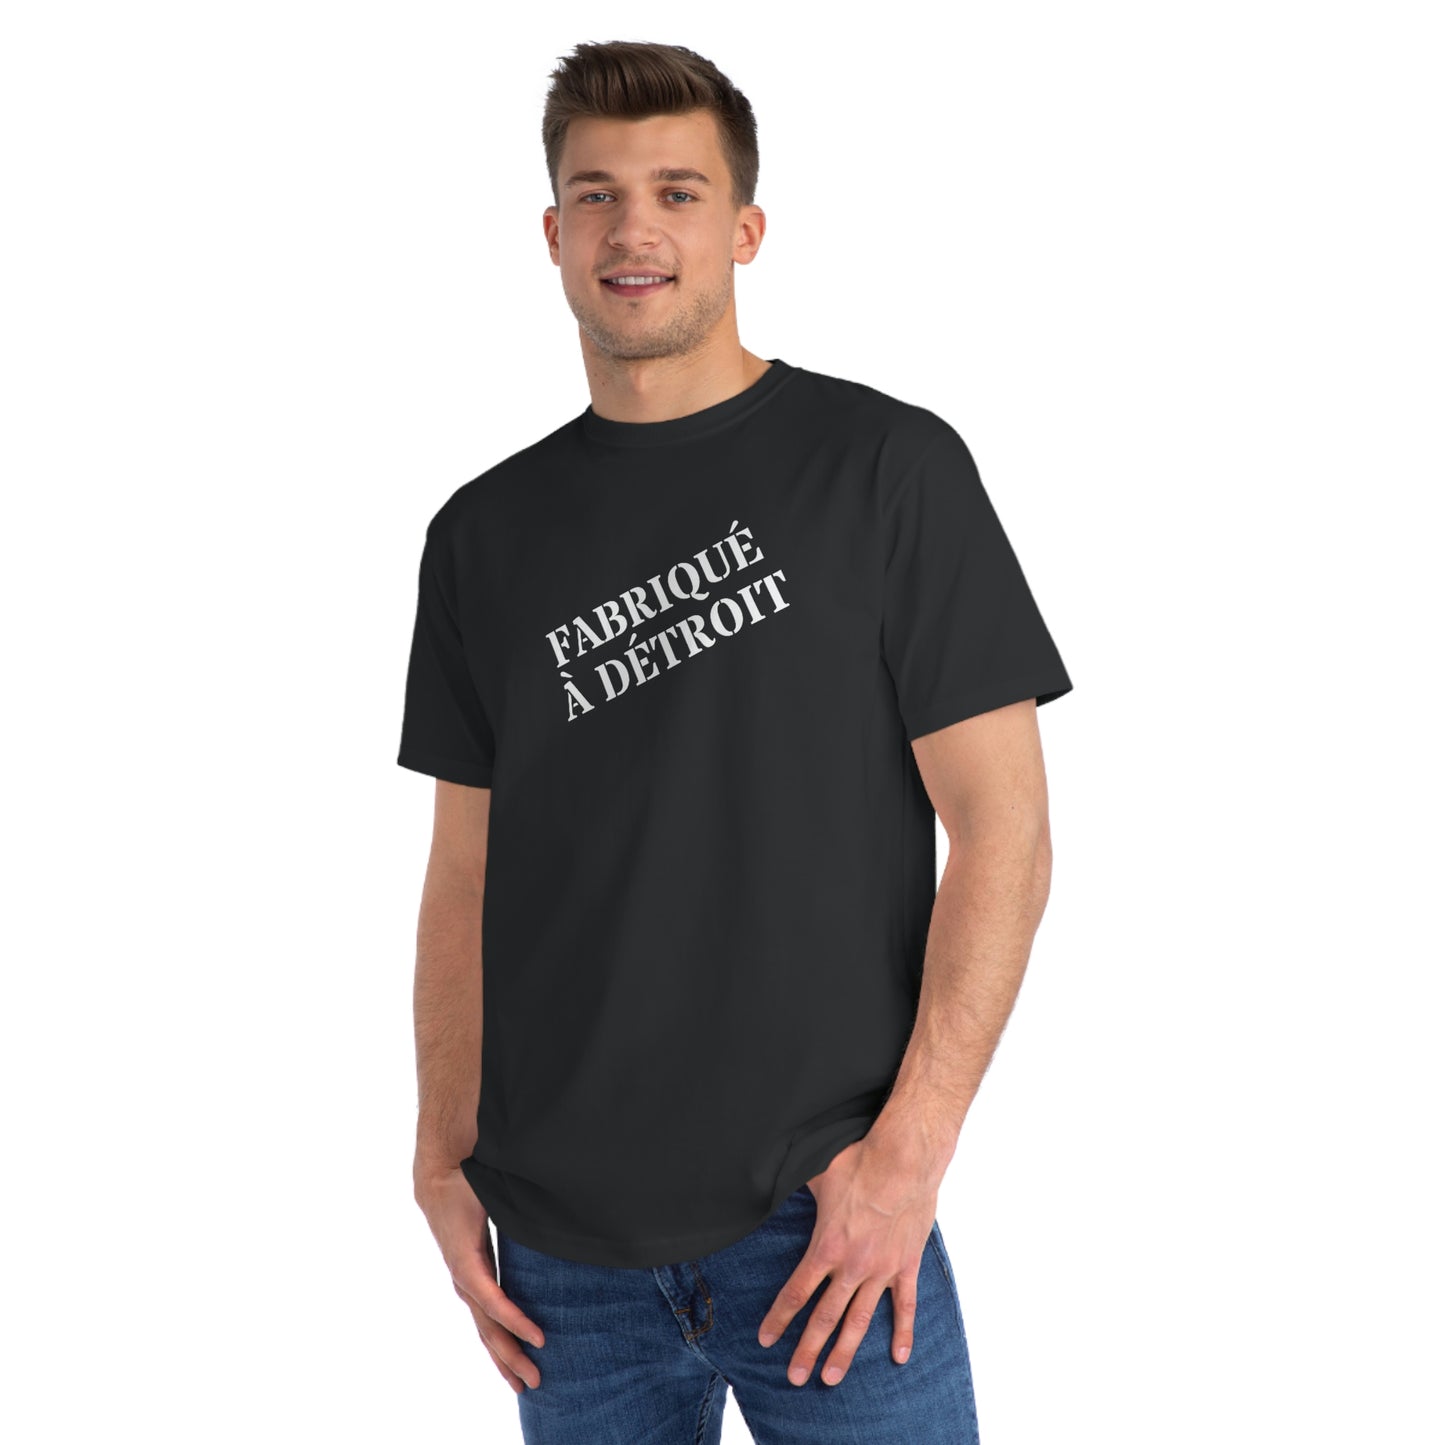 'Fabriqué à Détroit' T-Shirt | Organic Unisex